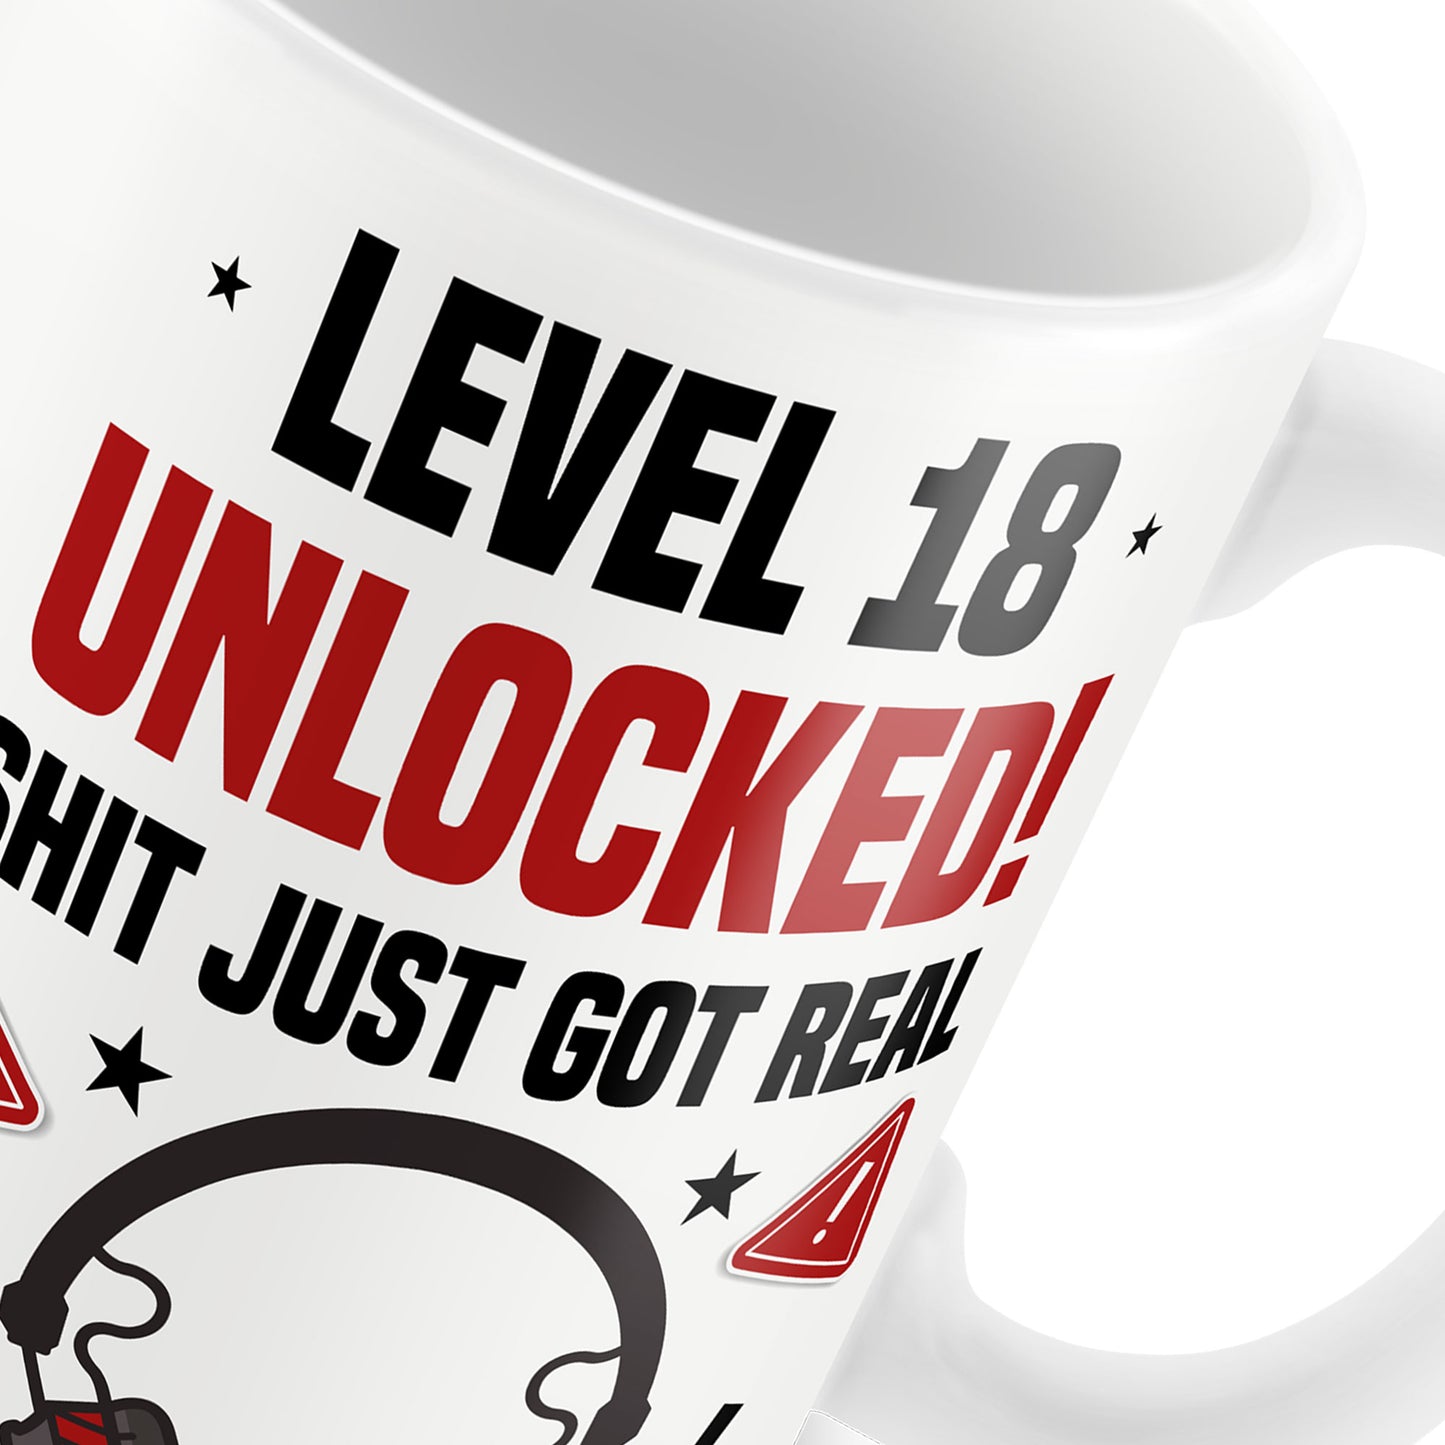 18th Birthday Mug Gamer Level Unlocked Gift For Him Her Men